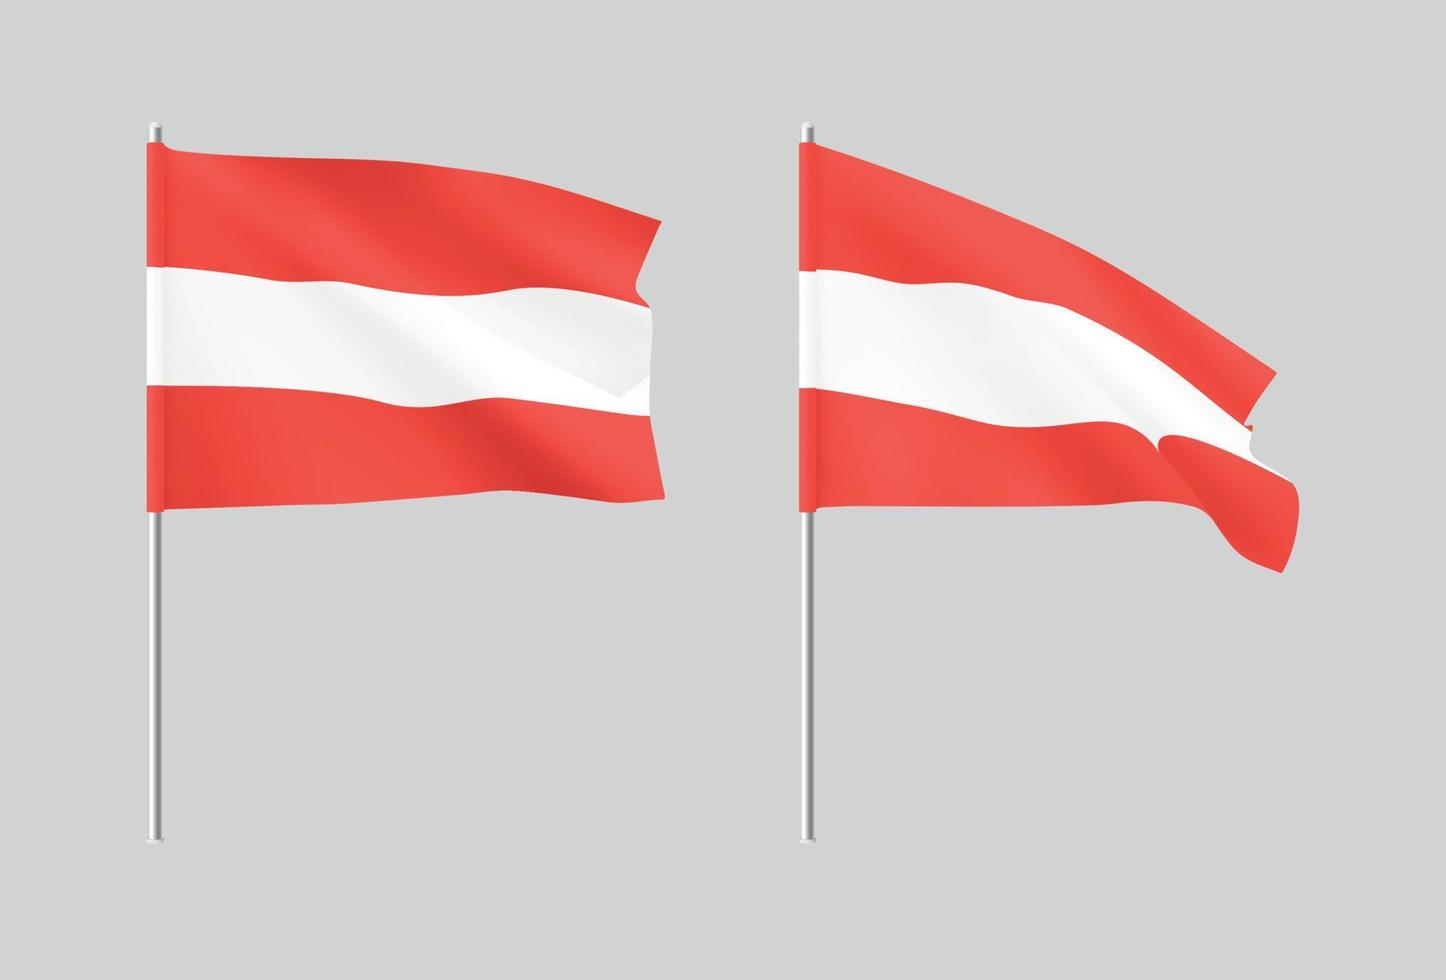 bandiere dell'Austria. set di bandiere nazionali realistiche austria. vettore